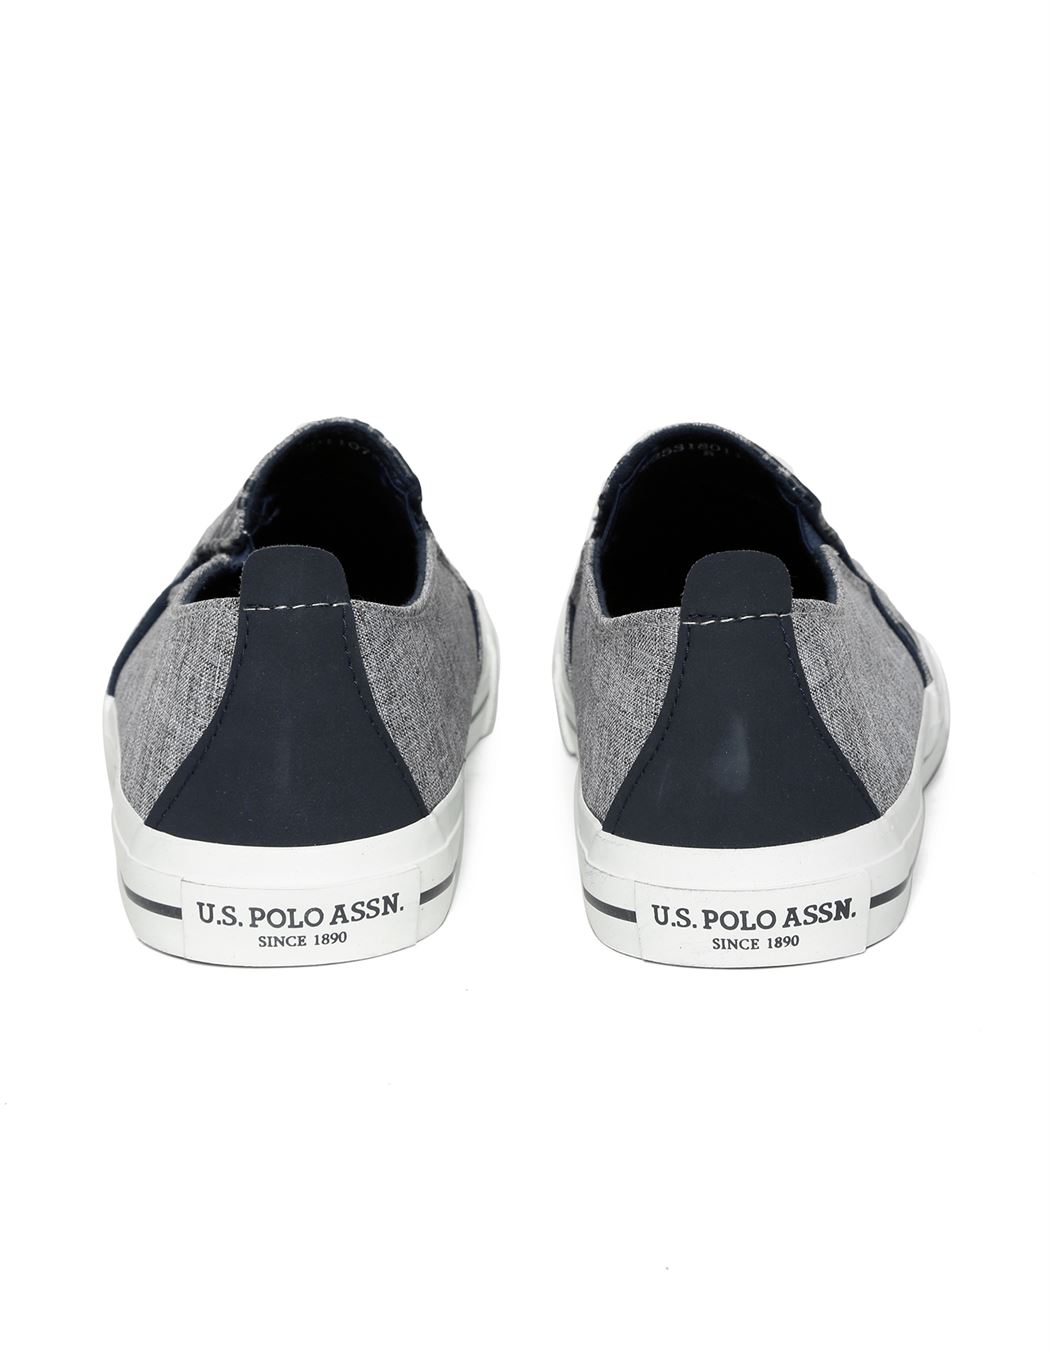 U.S. Polo Assn. Footwear Men Grey Slip On Canvas Shoes